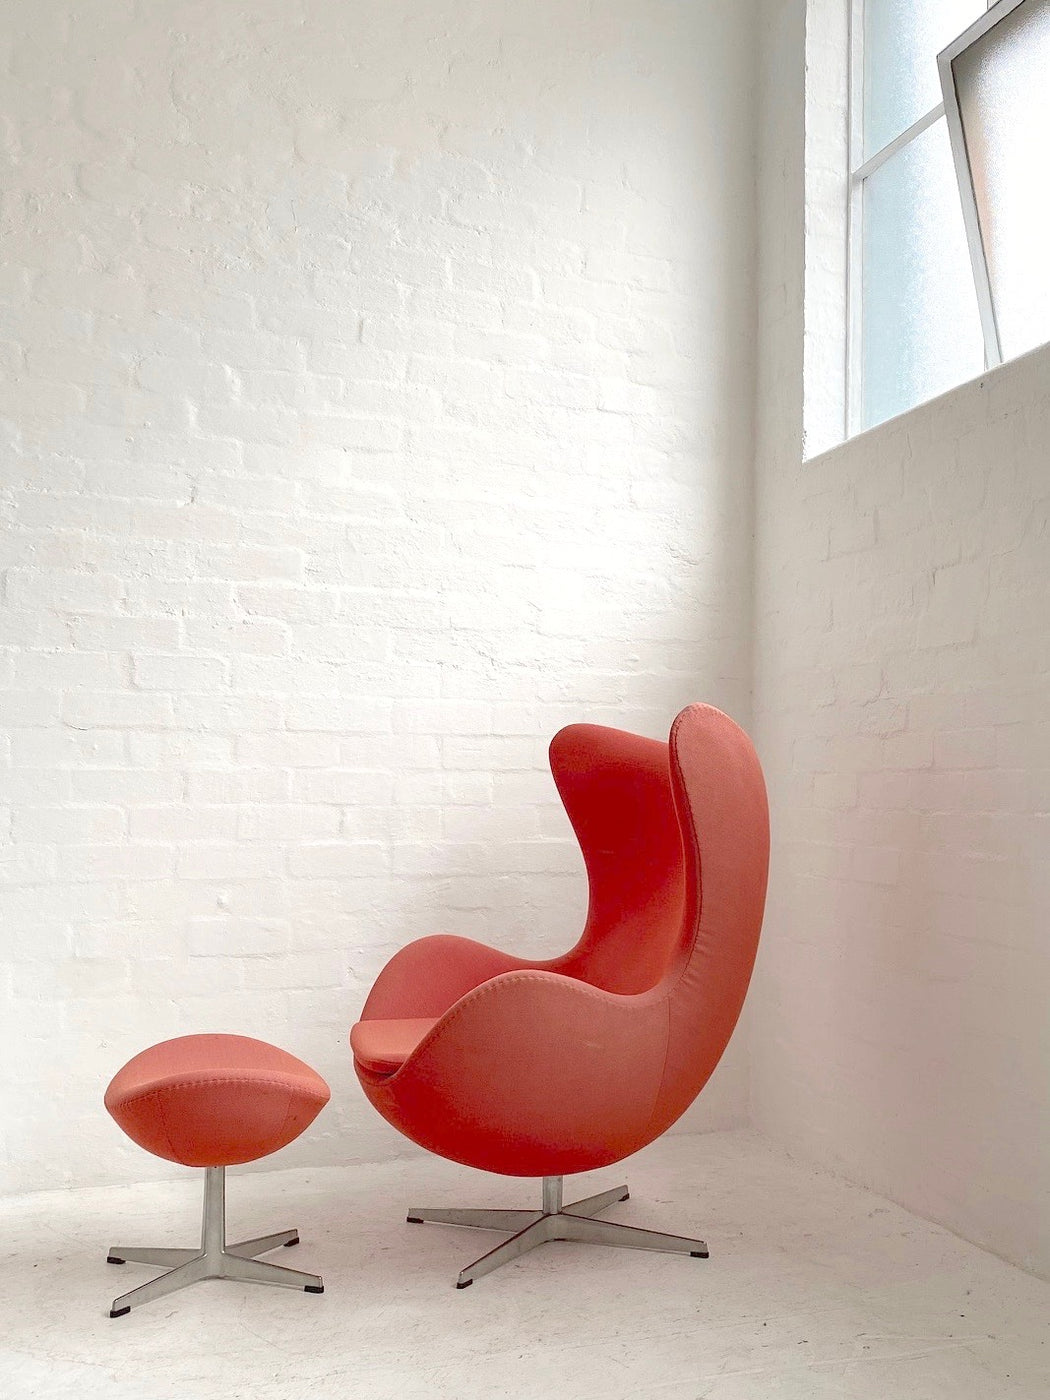 Arne Jacobsen 'Egg' Chair